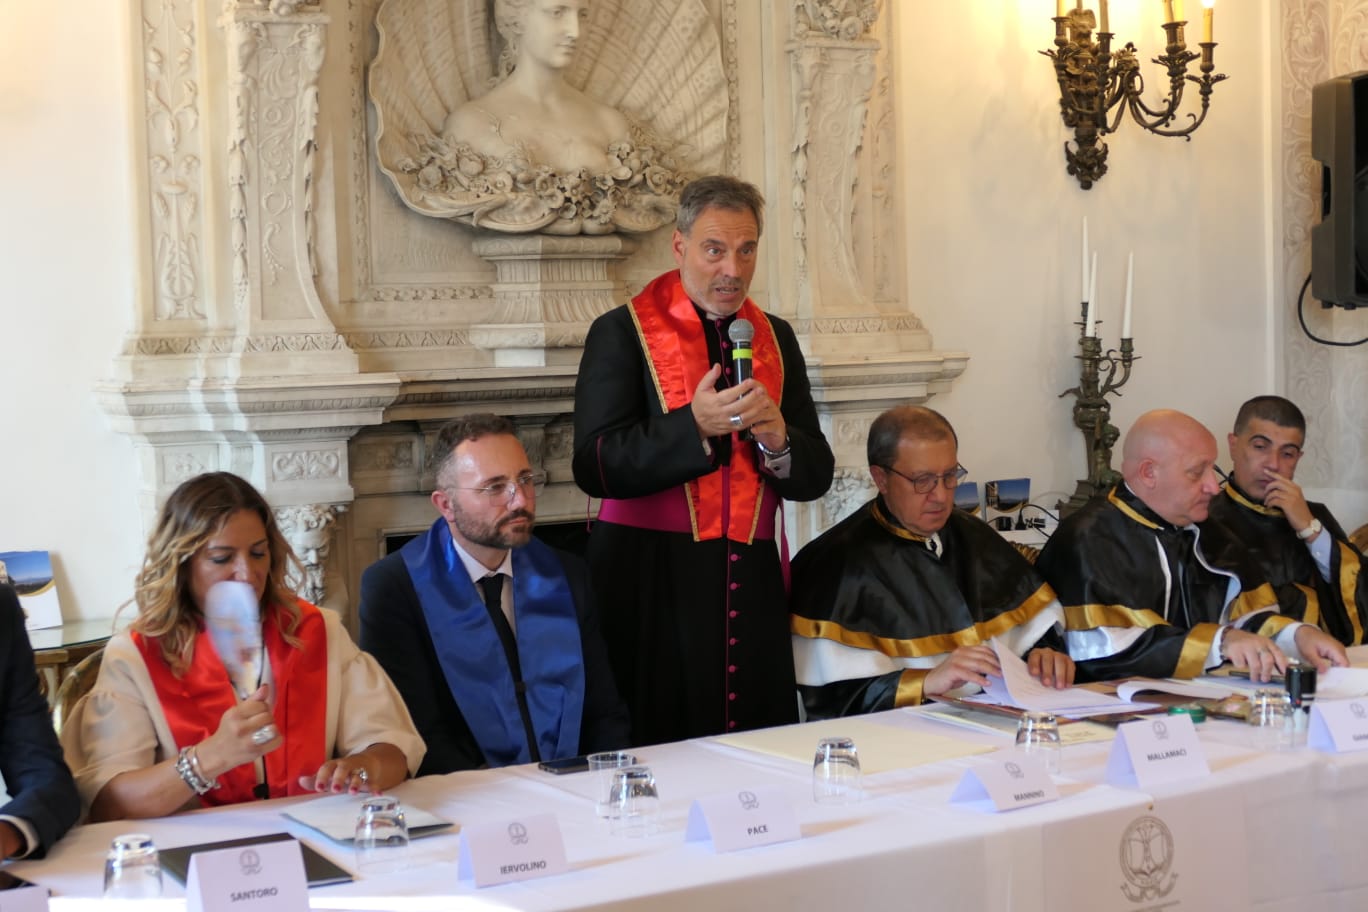 Cerimonia di conferimento lauree dall’Università svizzera ISFOA a Villa Domi Napoli